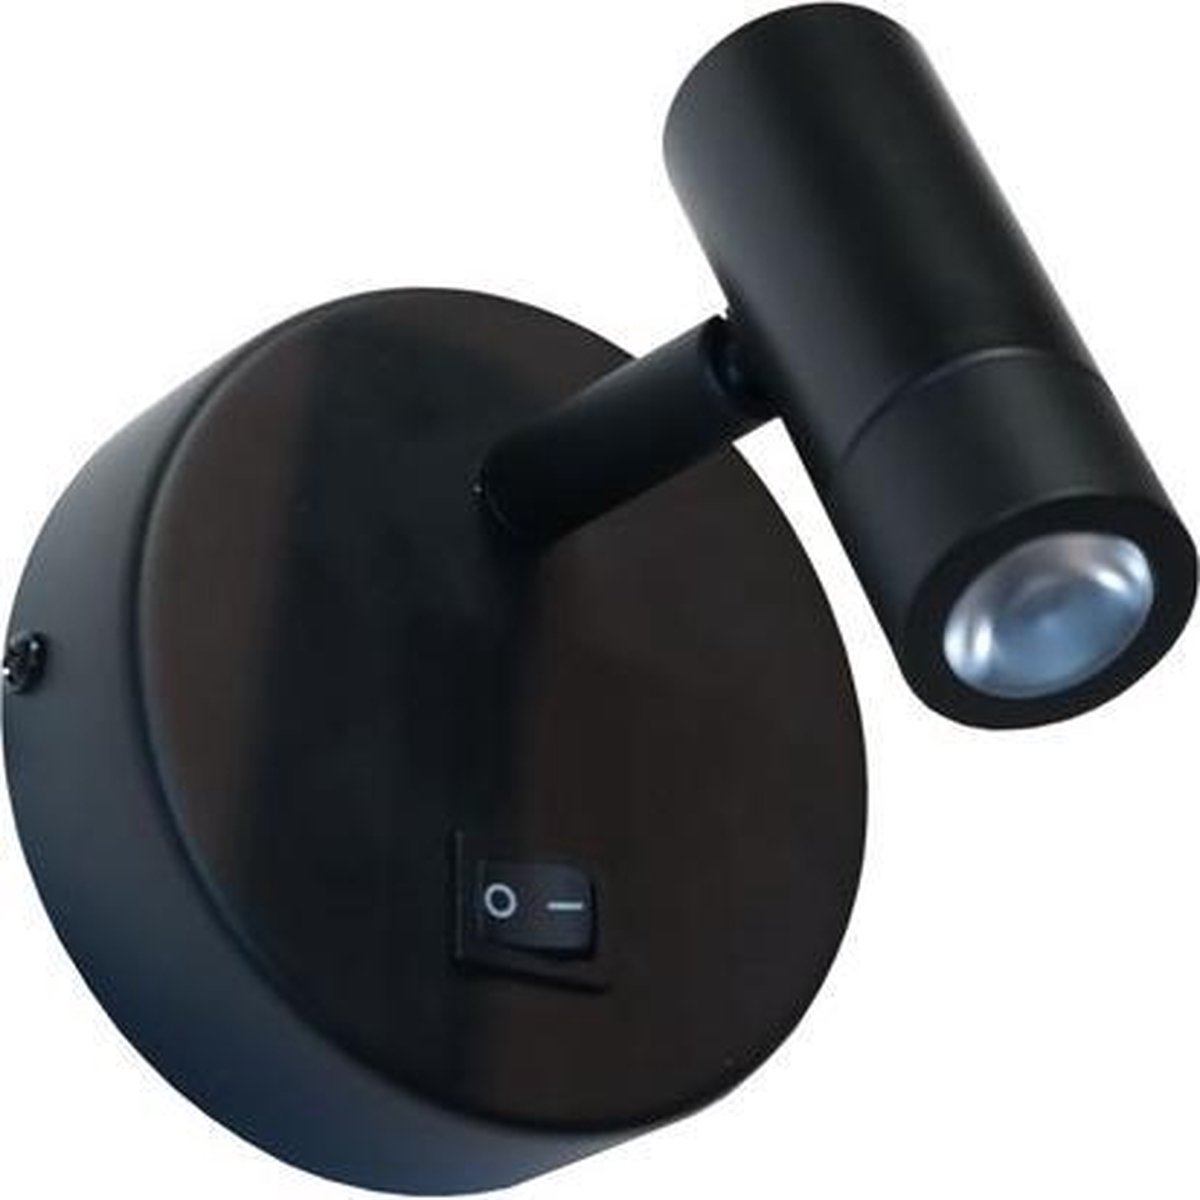 Wandlamp Simply Zwart - LED 3W 3000K 200lm - IP20 > wandlamp binnen zwart | wandlamp zwart | leeslamp zwart | bedlamp zwart | led lamp zwart | spot lamp zwart